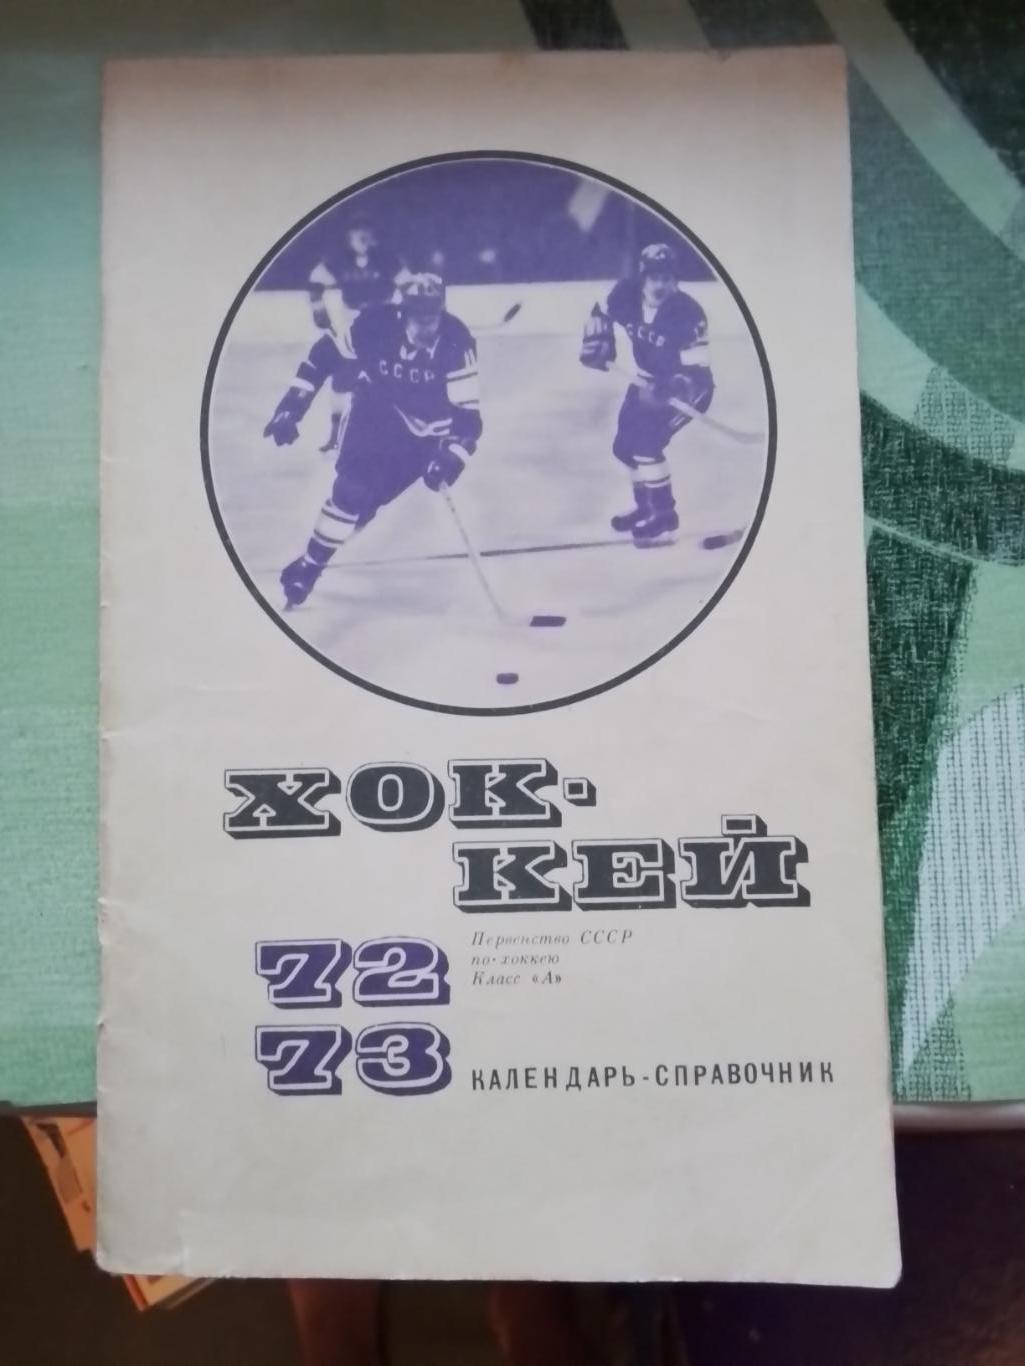 Календарь-справочник ФиС 1972 - 1973